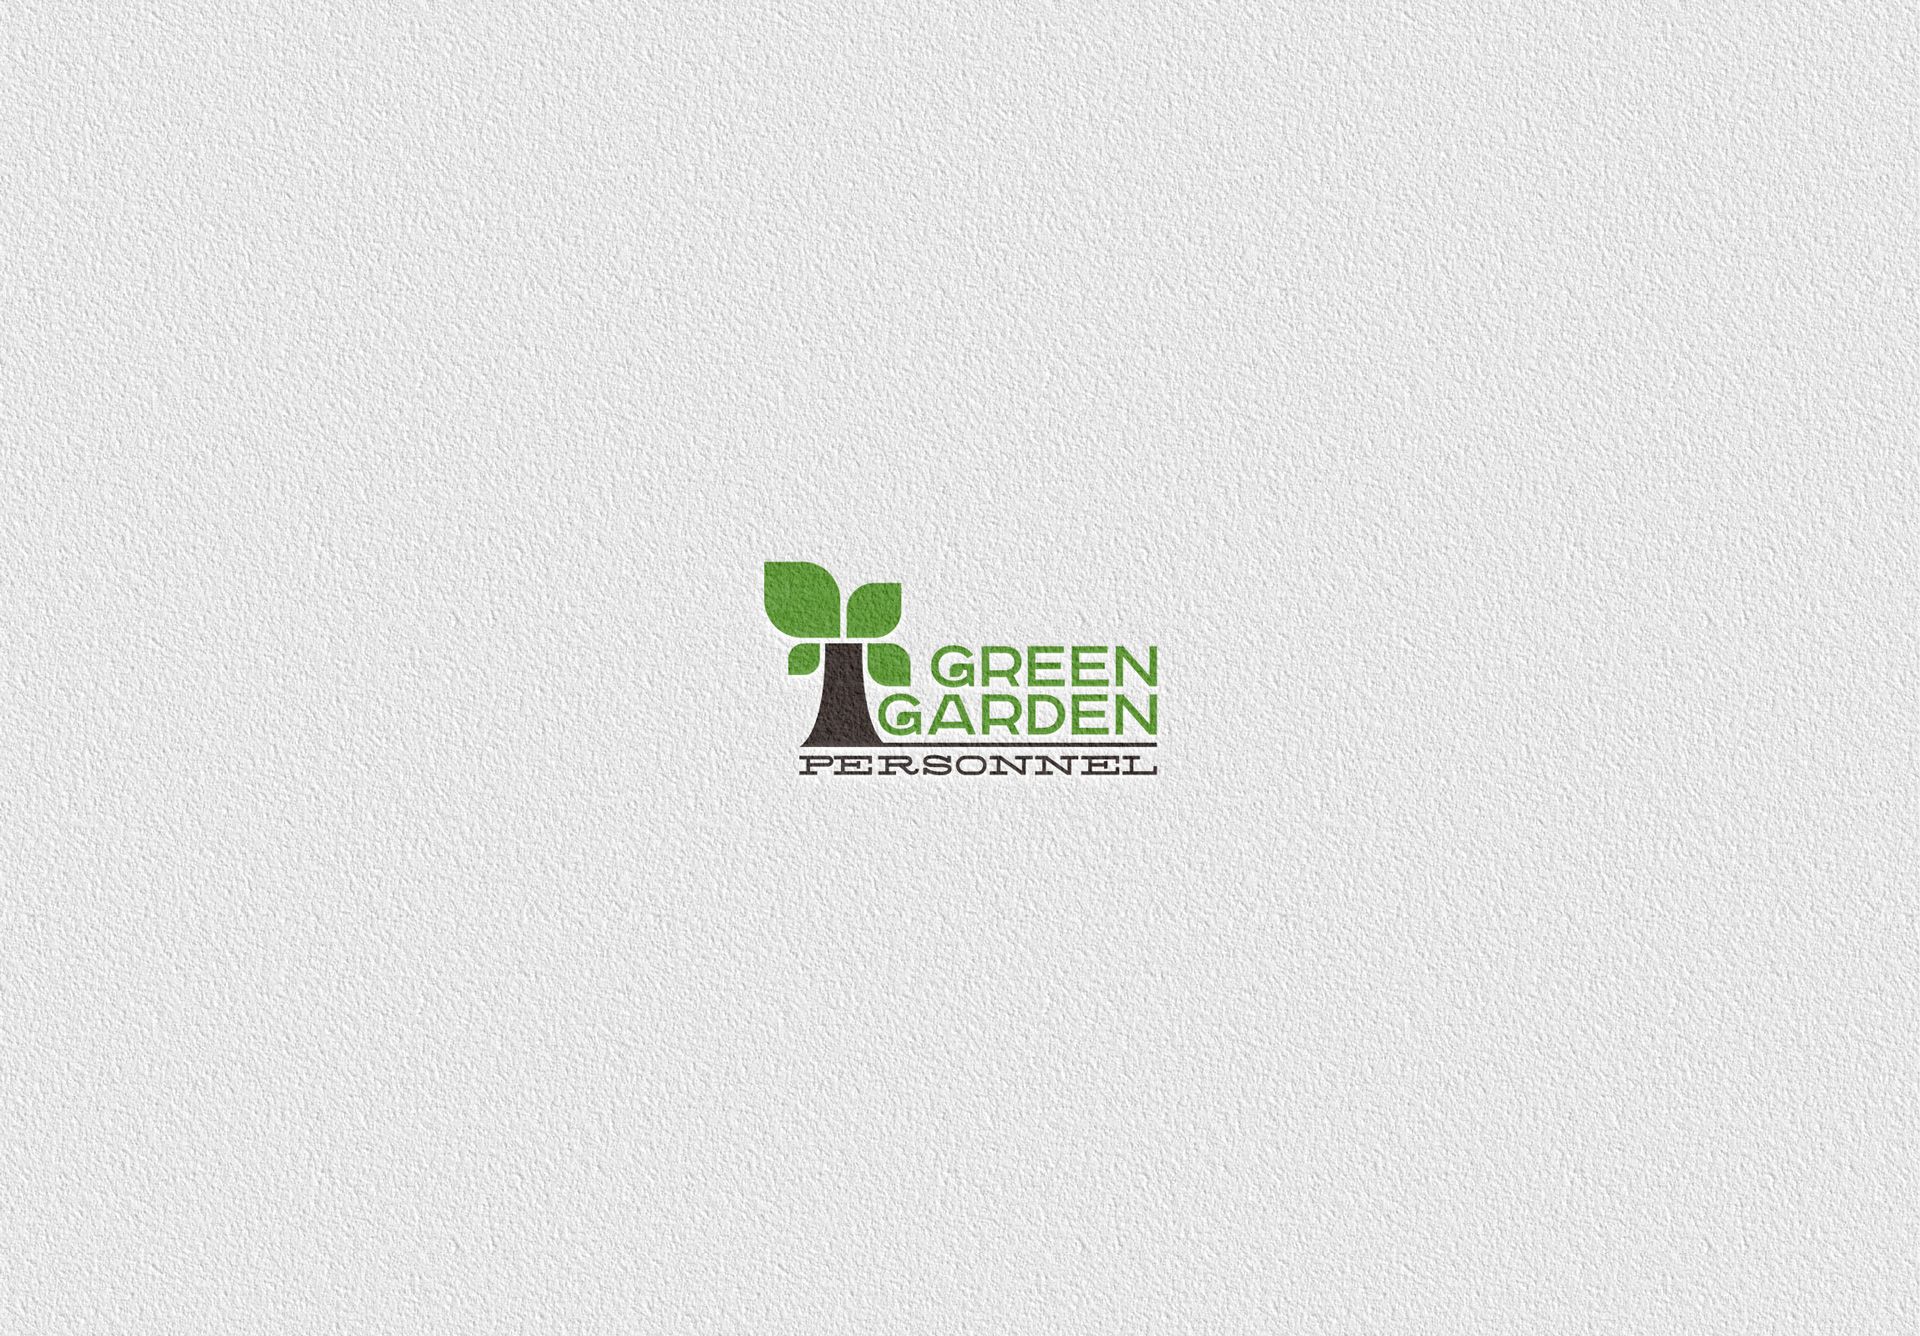  Фирм. стиль для Green Garden Personnel - дизайнер Advokat72